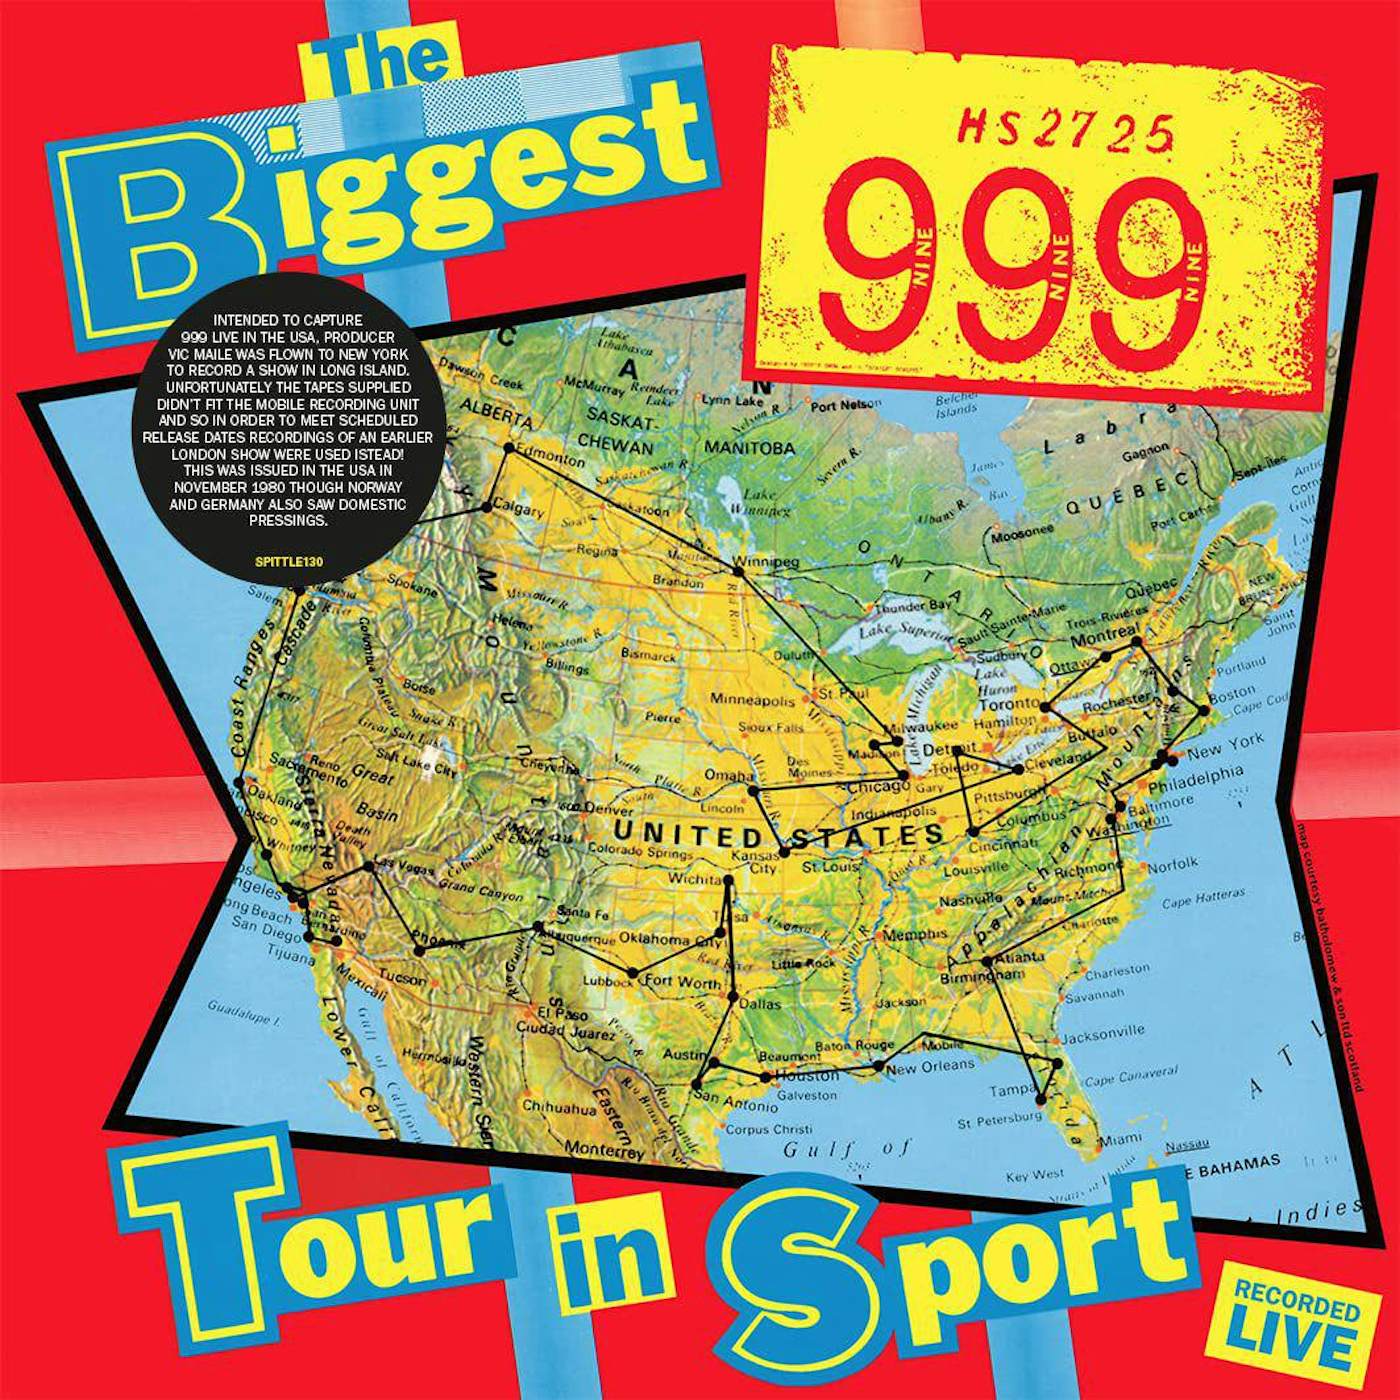 999 BIGGEST TOUR IN SPORT Vinyl Record